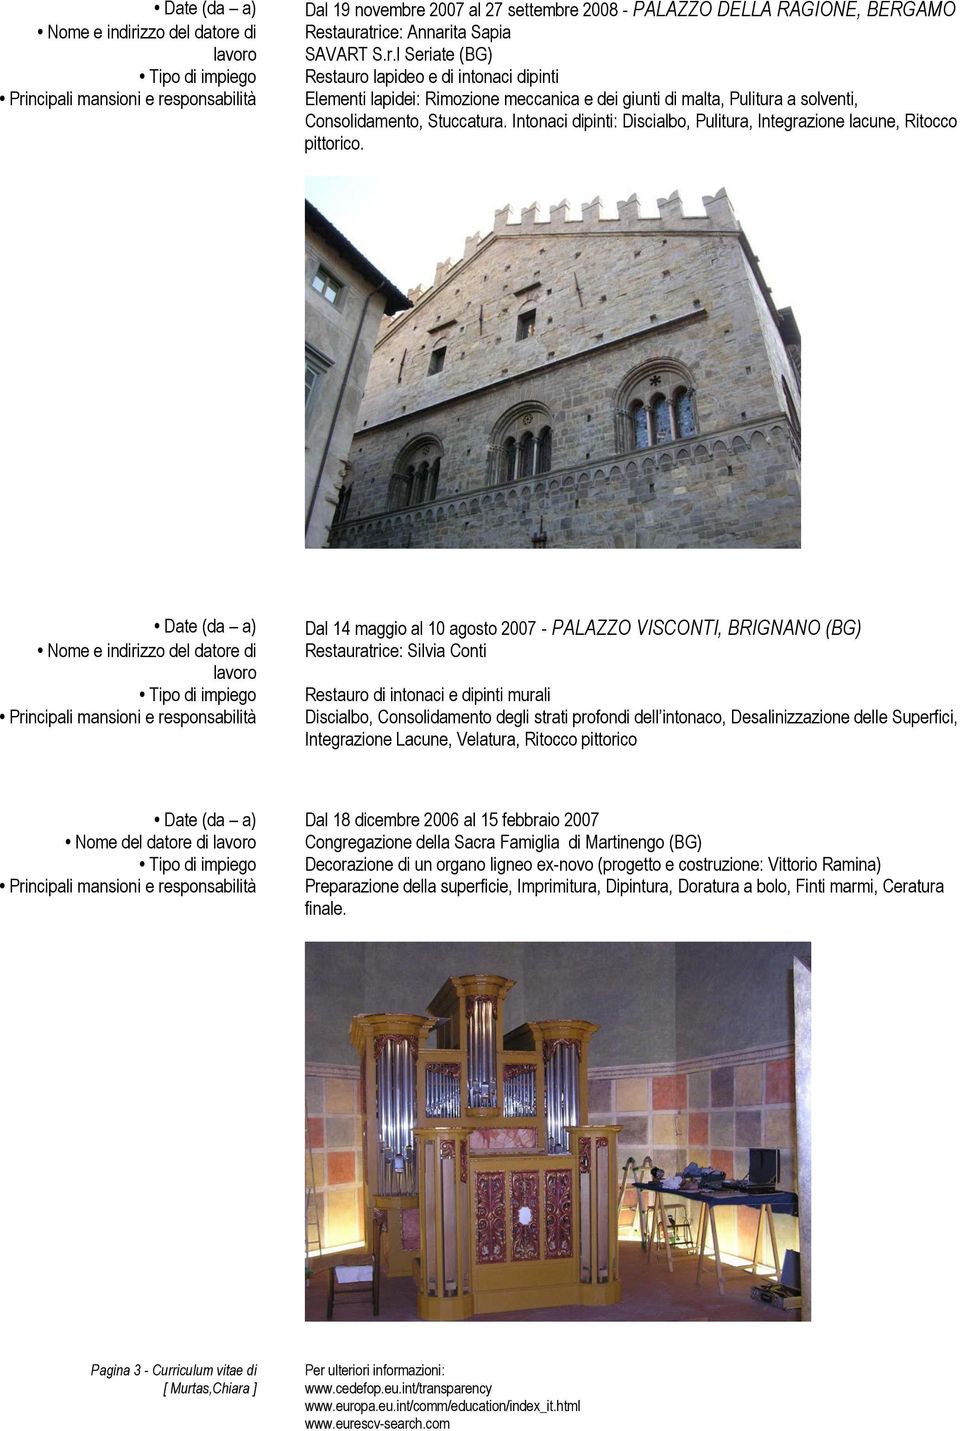 Dal 14 maggio al 10 agosto 2007 - PALAZZO VISCONTI, BRIGNANO (BG) Restauratrice: Silvia Conti Restauro di intonaci e dipinti murali Discialbo, Consolidamento degli strati profondi dell intonaco,